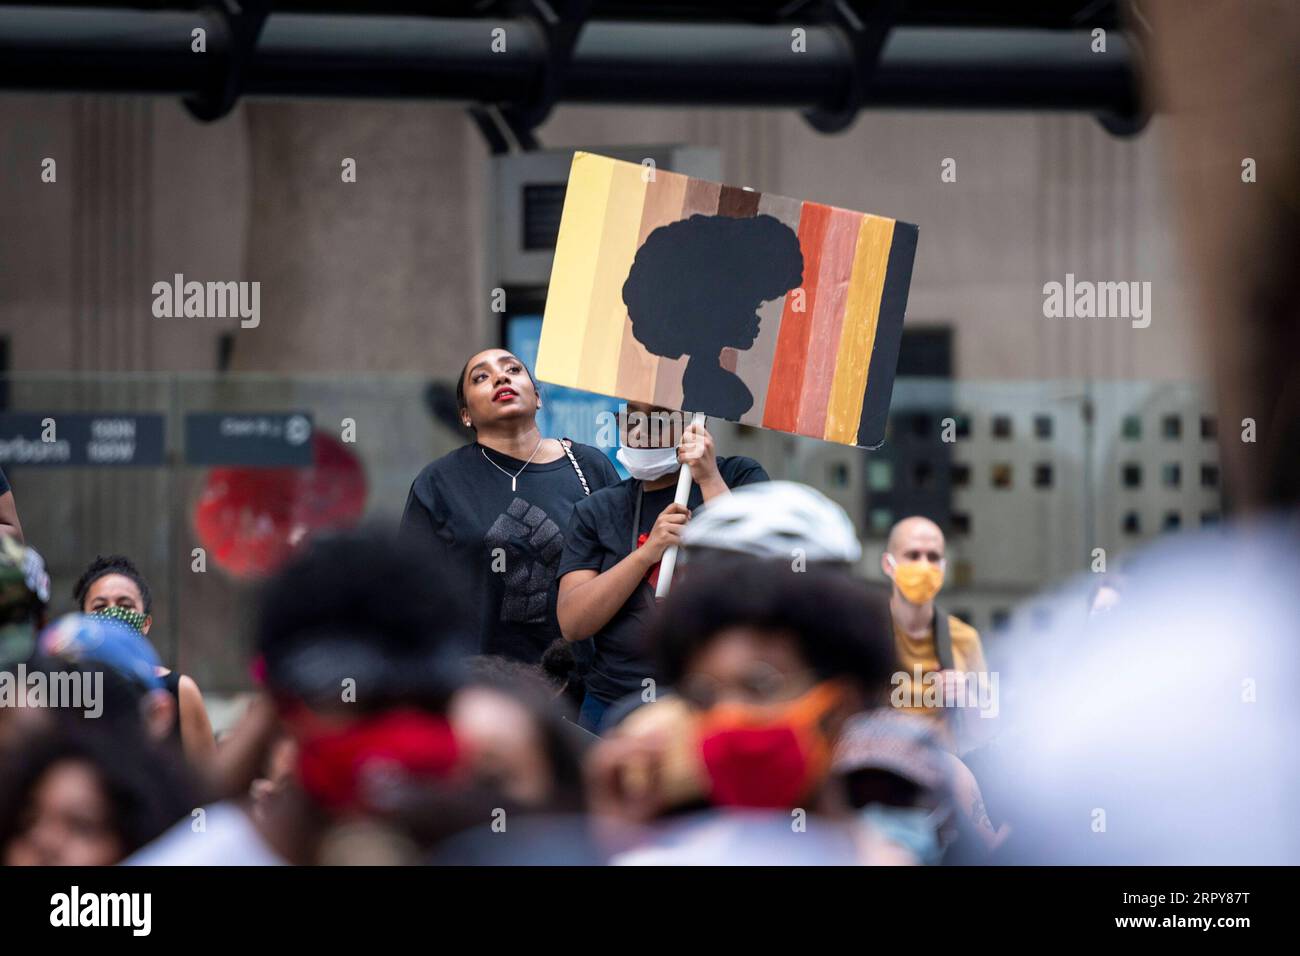 News Bilder des Tages 200619 -- CHICAGO, 19 giugno 2020 Xinhua -- Una donna tiene un cartello durante una manifestazione al Daley Plaza di Chicago, negli Stati Uniti, il 19 giugno 2020. Migliaia di persone si riunirono nel centro di Chicago e in diversi altri eventi in tutta Chicago venerdì per celebrare il diciannovesimo giugno, commemorando la fine della schiavitù negli Stati Uniti. Foto di Chris Dilts/Xinhua U.S.-CHICAGO-JUNETEENTH-COMMEMORAZIONE PUBLICATIONxNOTxINxCHN Foto Stock